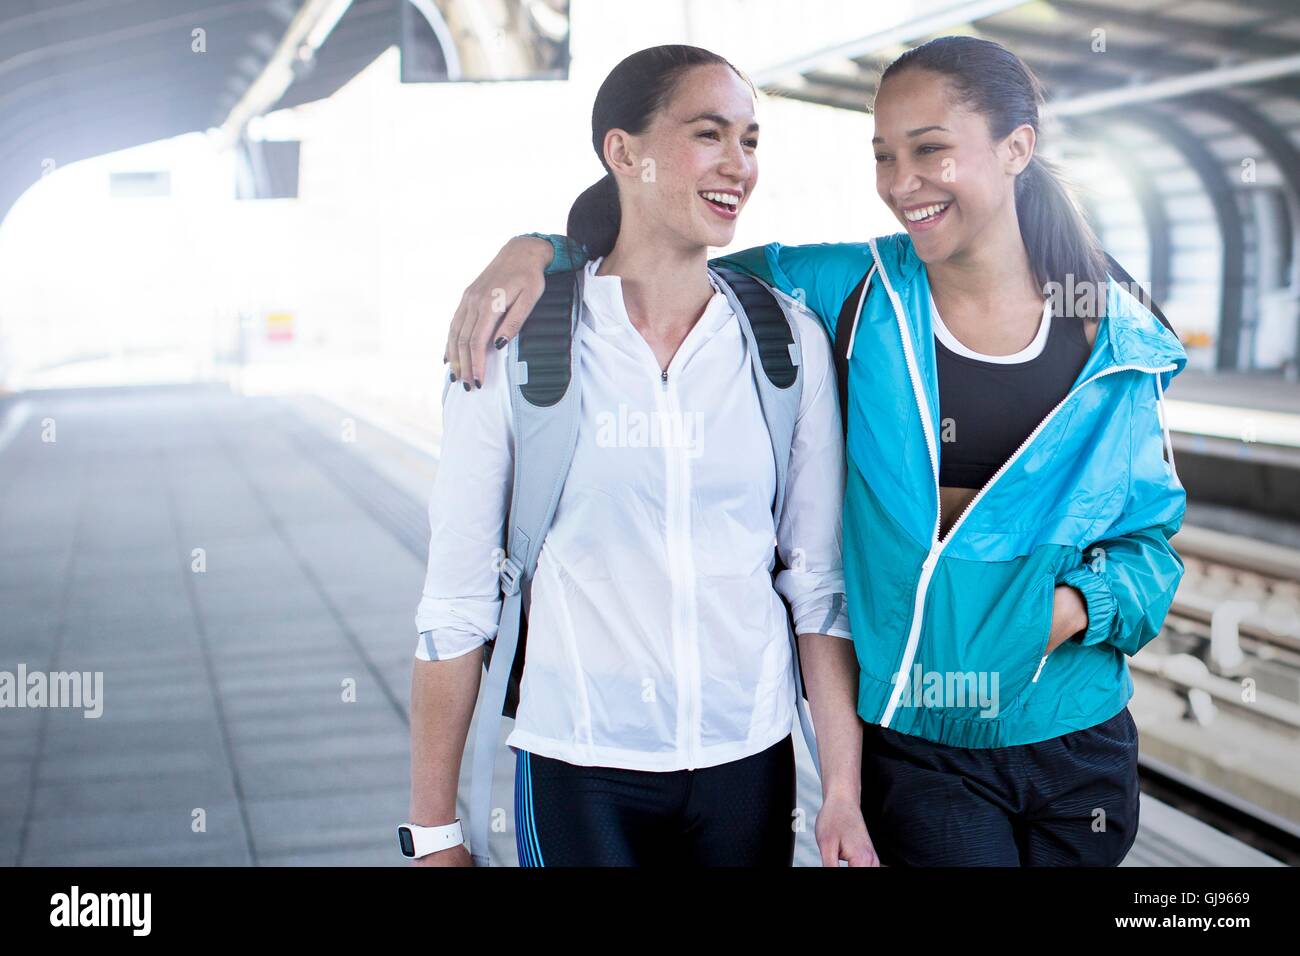 -MODELL VERÖFFENTLICHT. Zwei junge Frauen in Sportbekleidung auf Bahnsteig. Stockfoto